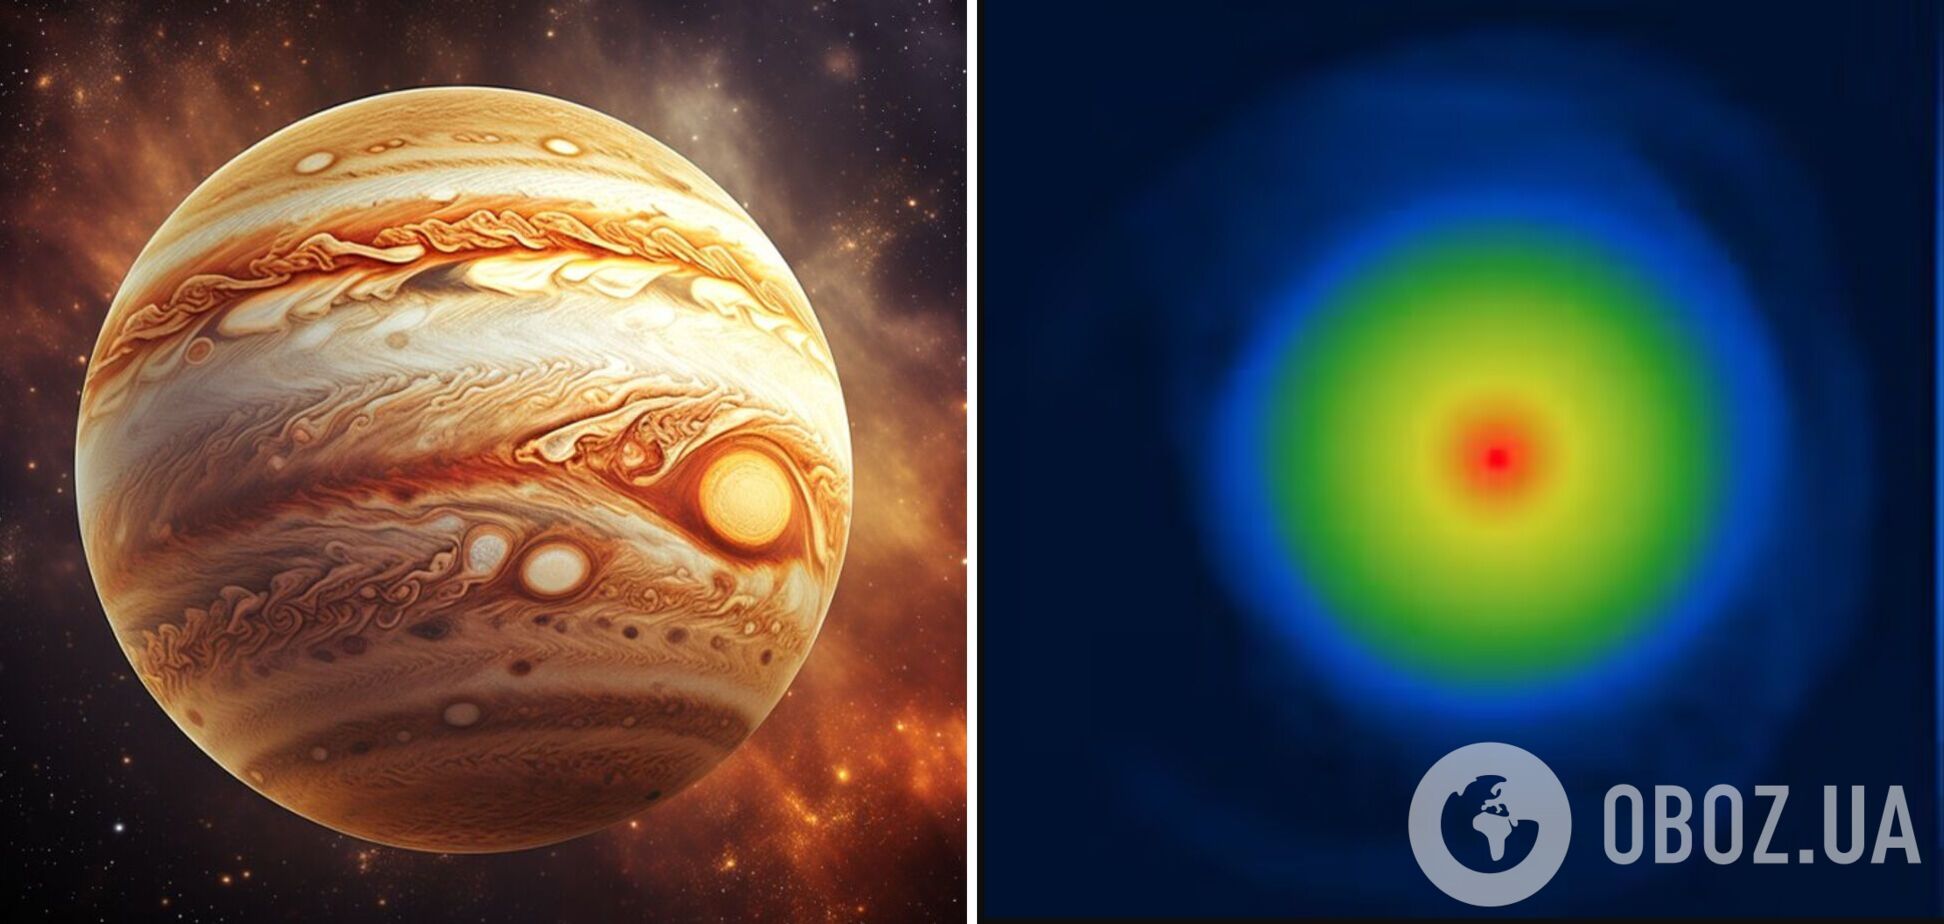 Земля круглая, но Юпитер мог быть плоским: ученые заявили о революционном открытии. Фото